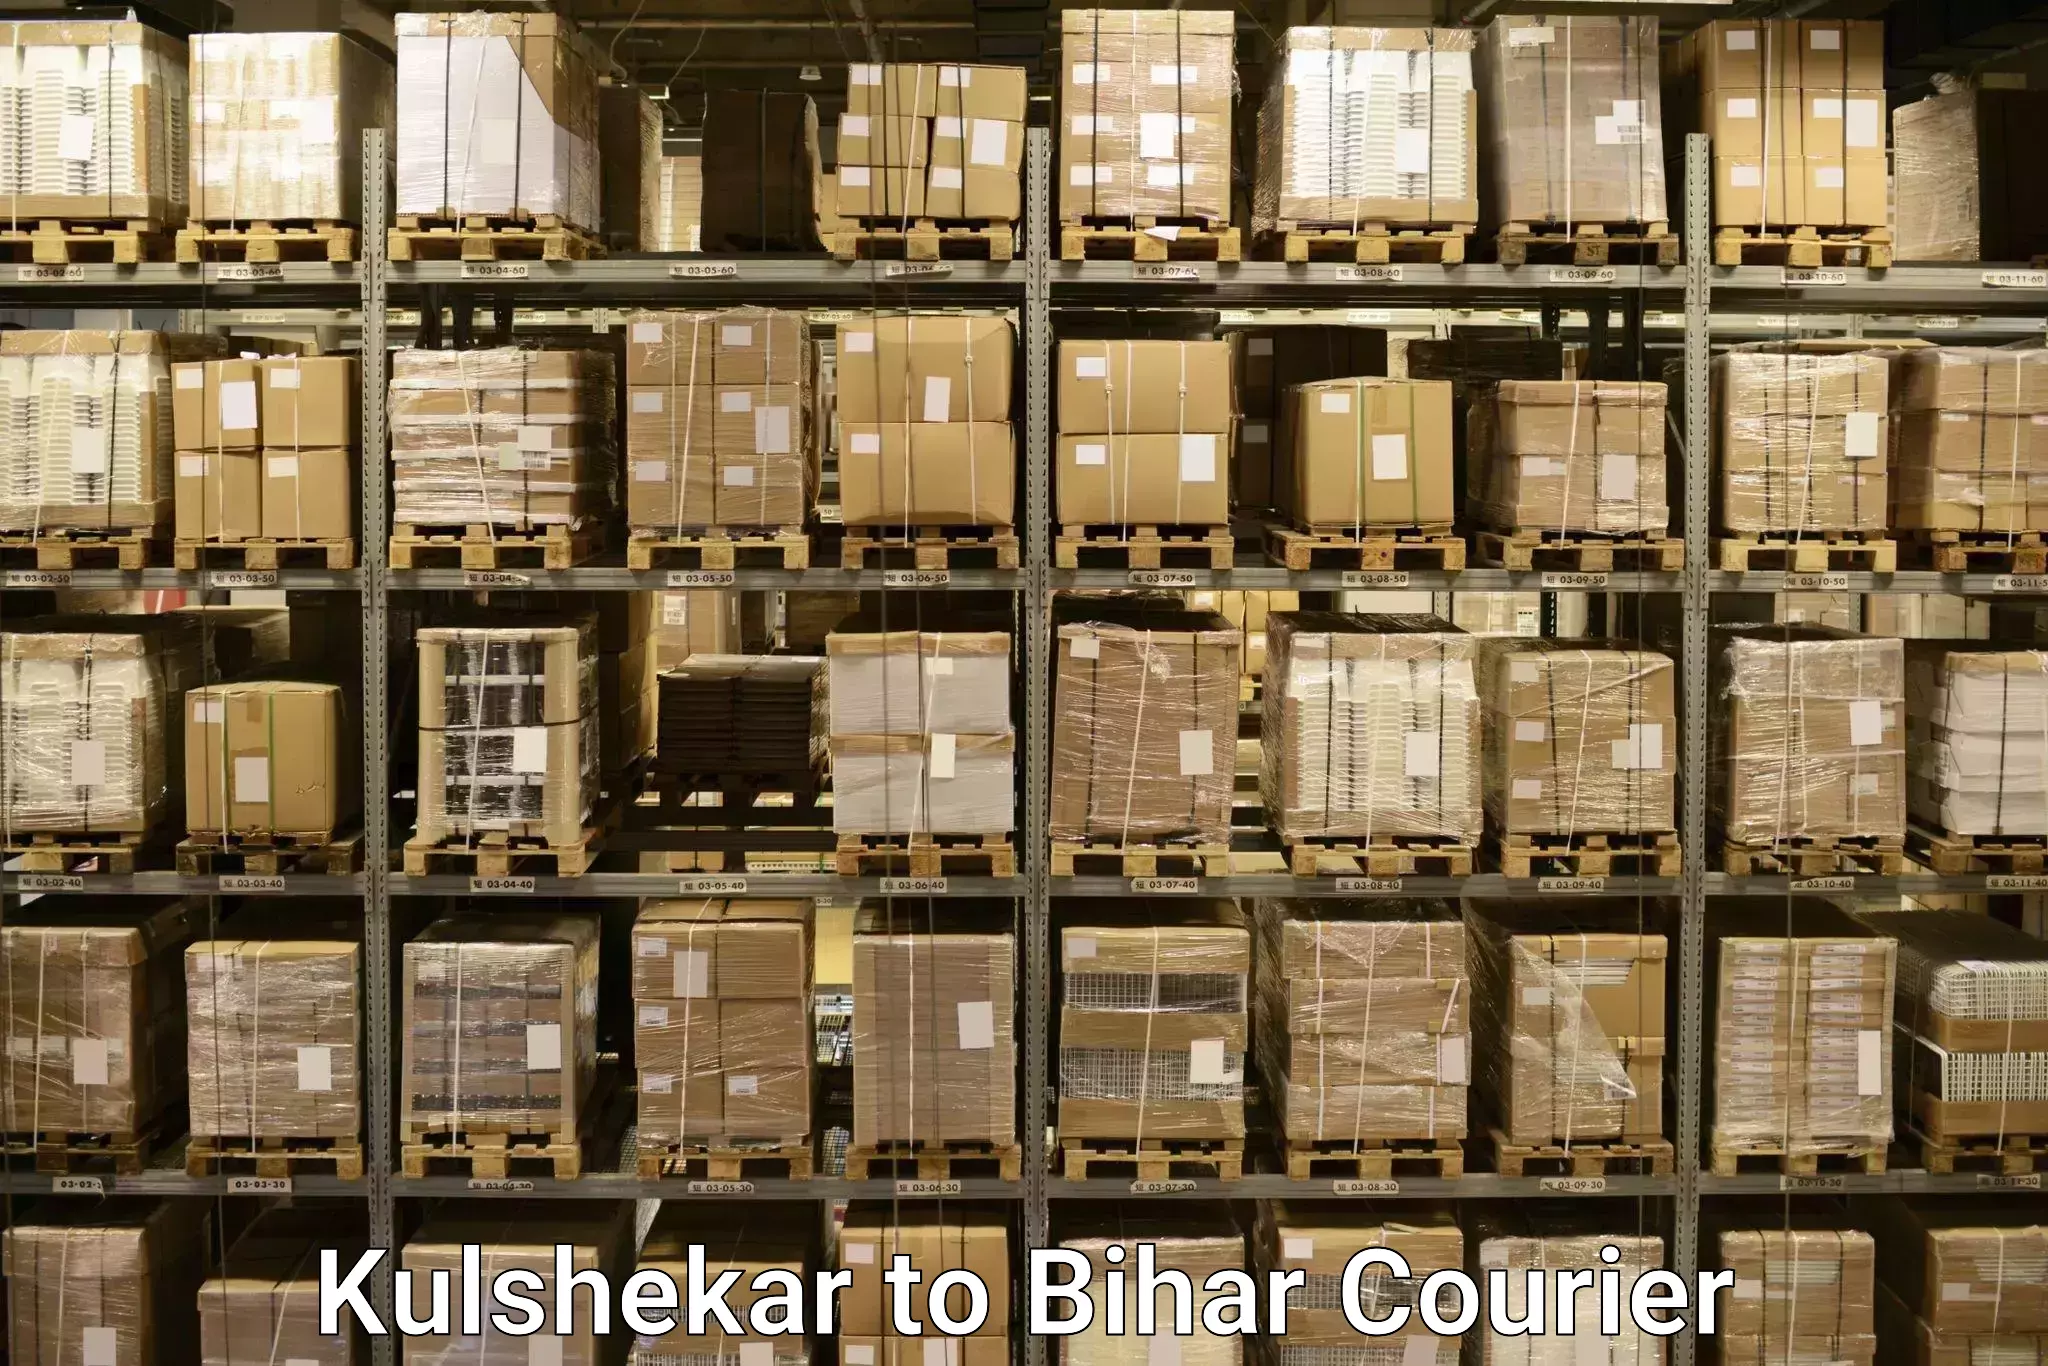 Luggage shipping estimate Kulshekar to Patna